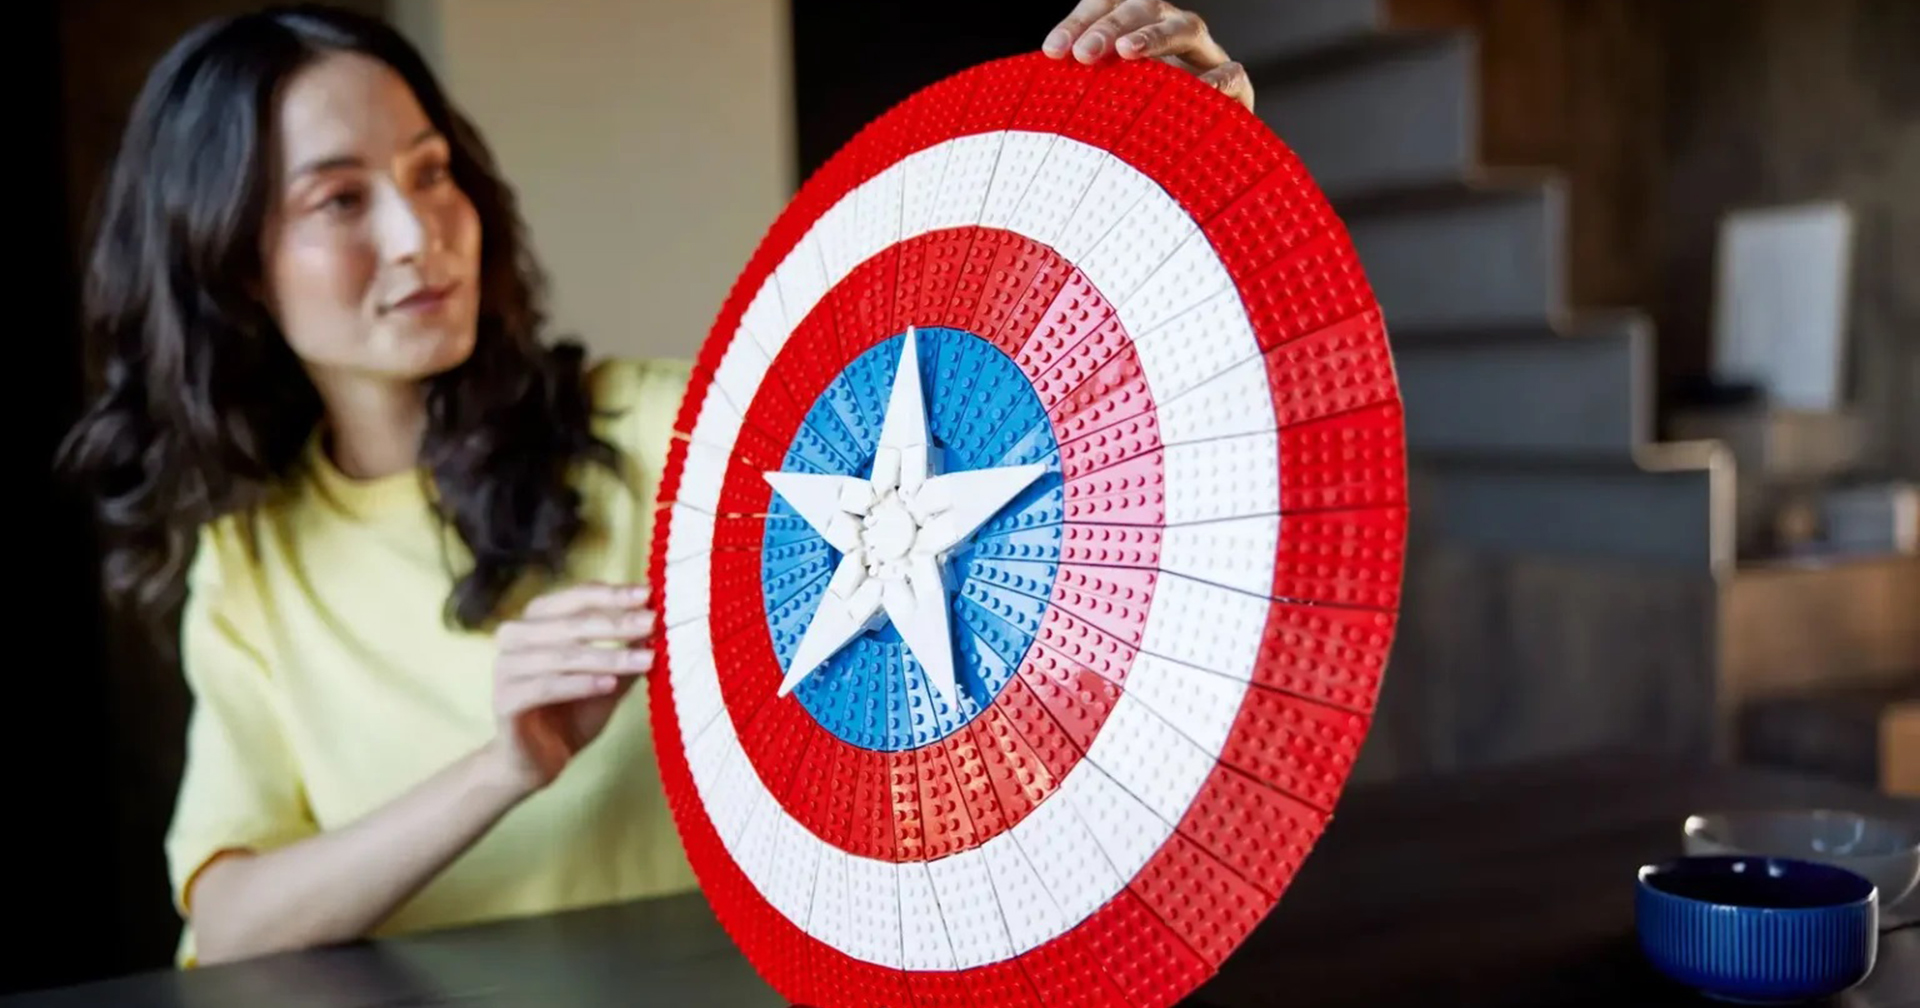 LEGO เปิดตัวชุดตัวต่อโล่ Captain America จำนวน 3,000 ชิ้น ขนาดเกือบเท่าของจริง